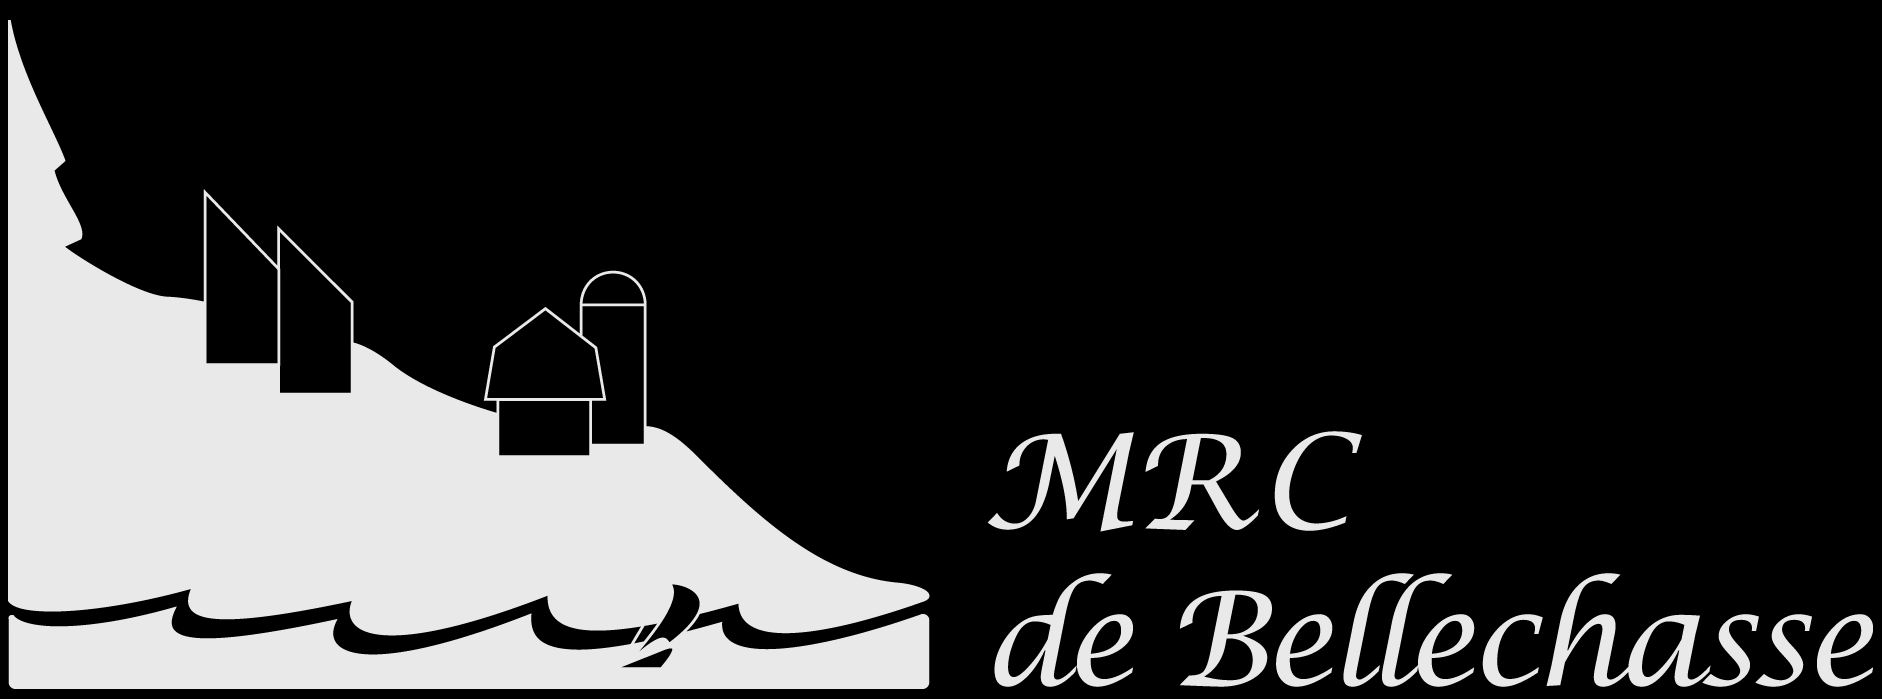 MRC de Bellechasse